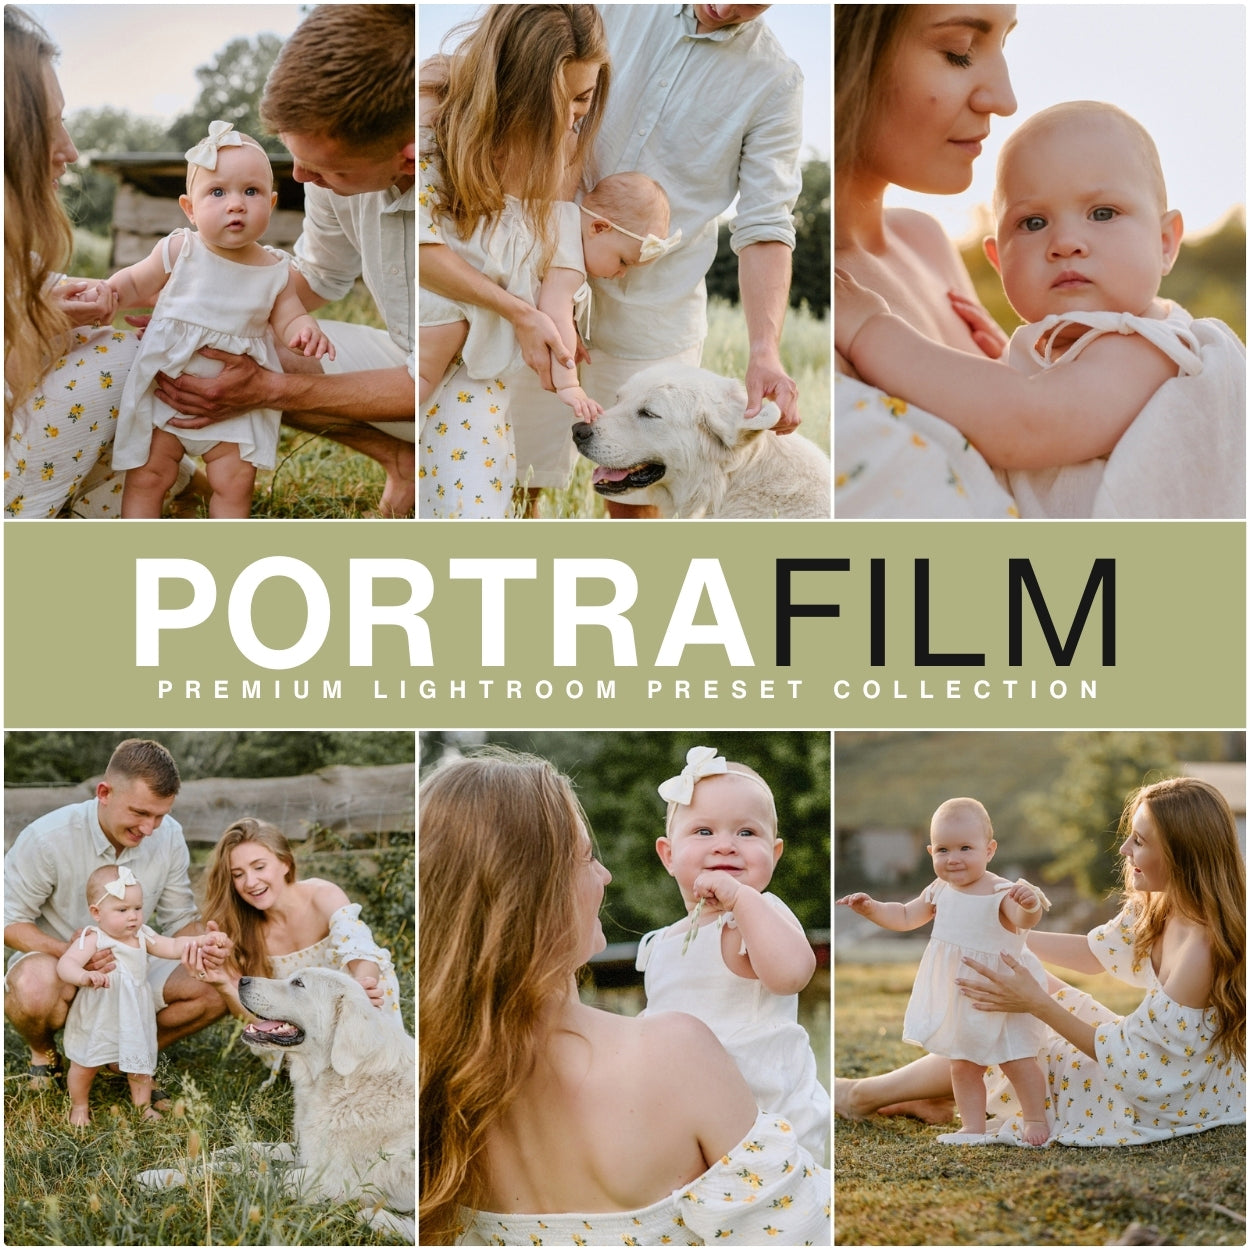 Kodak Portra 400 Film Filter Lightroom Presets For Adobe Lightroom Mobile & Desktop By Lou And Marks Presets filters